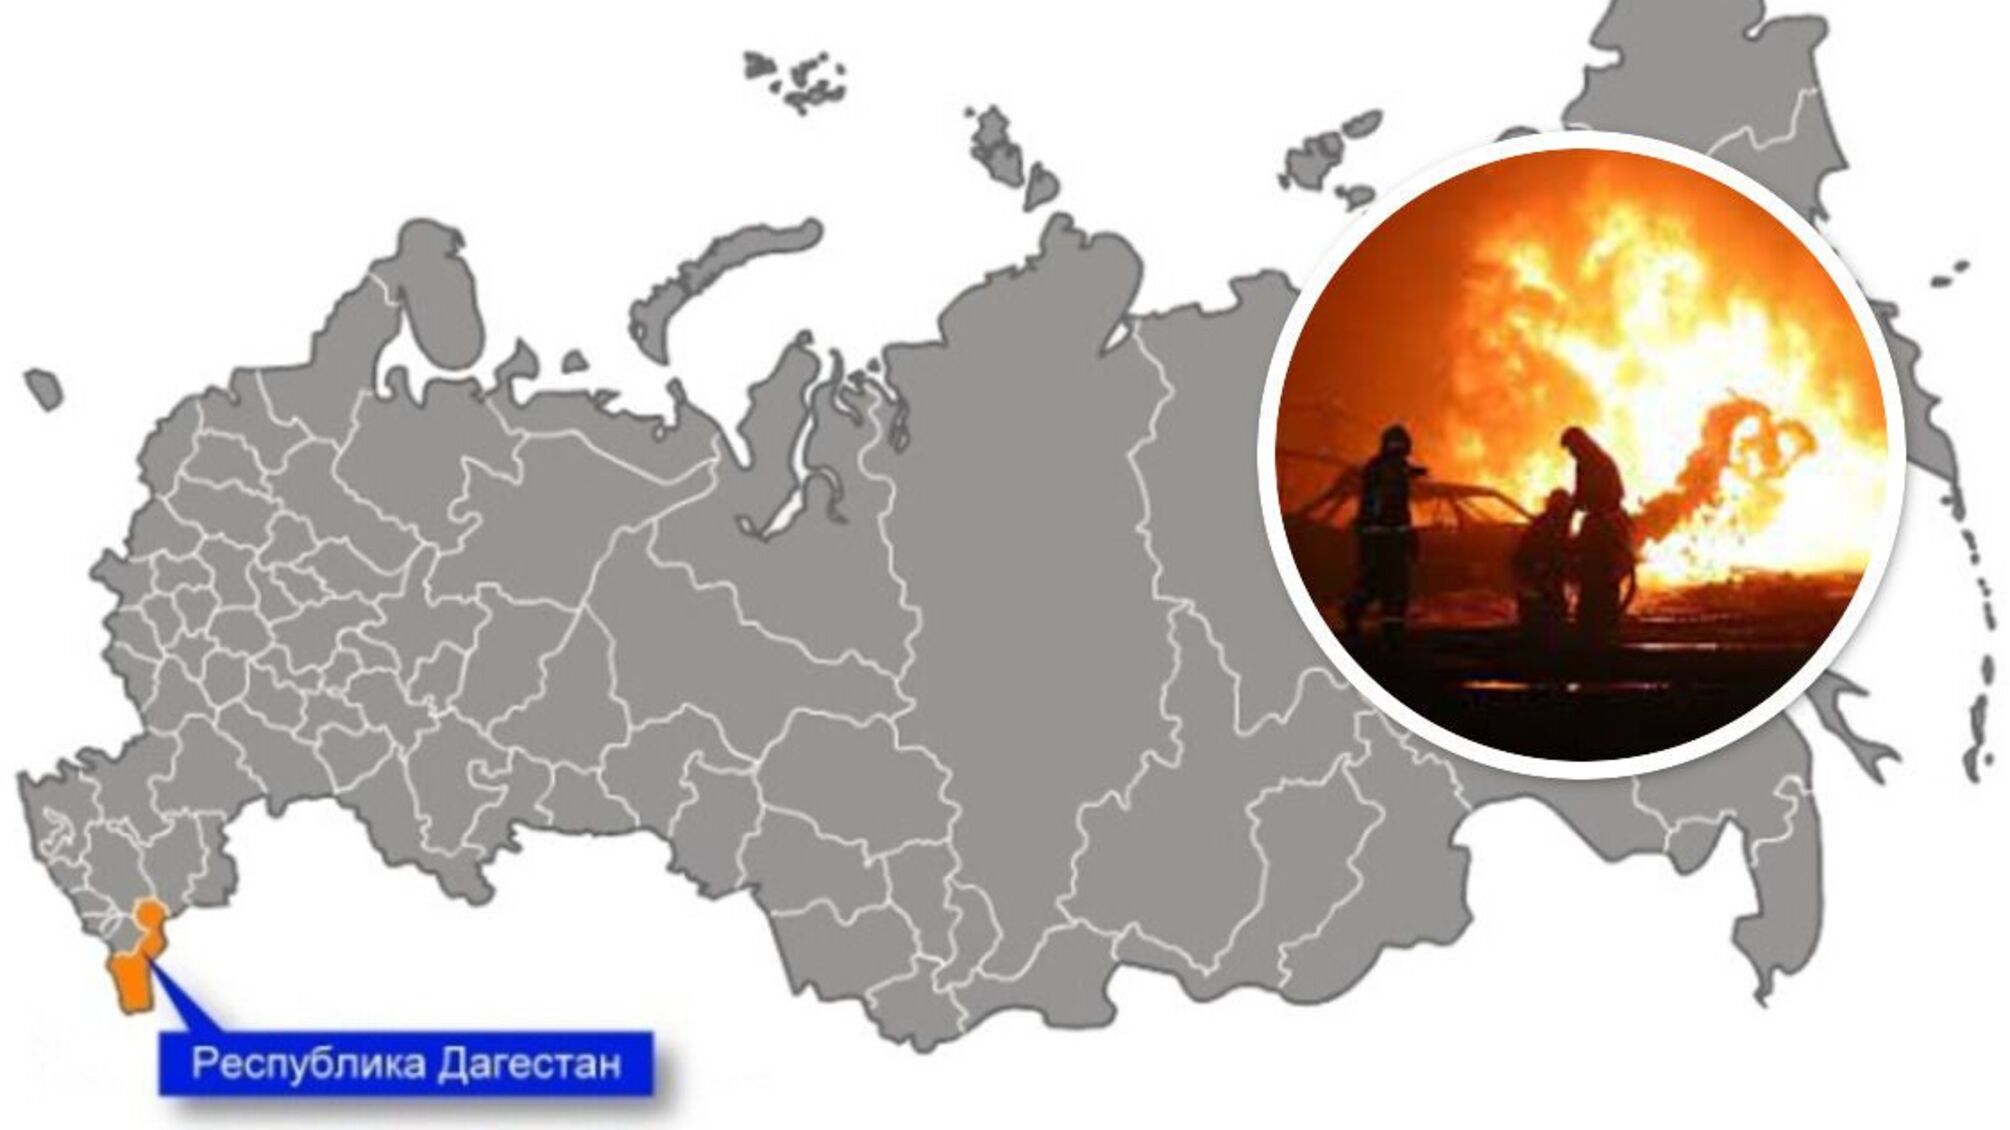 Вздрогнул весь город: в российском Дагестане взорвалась топливная станция